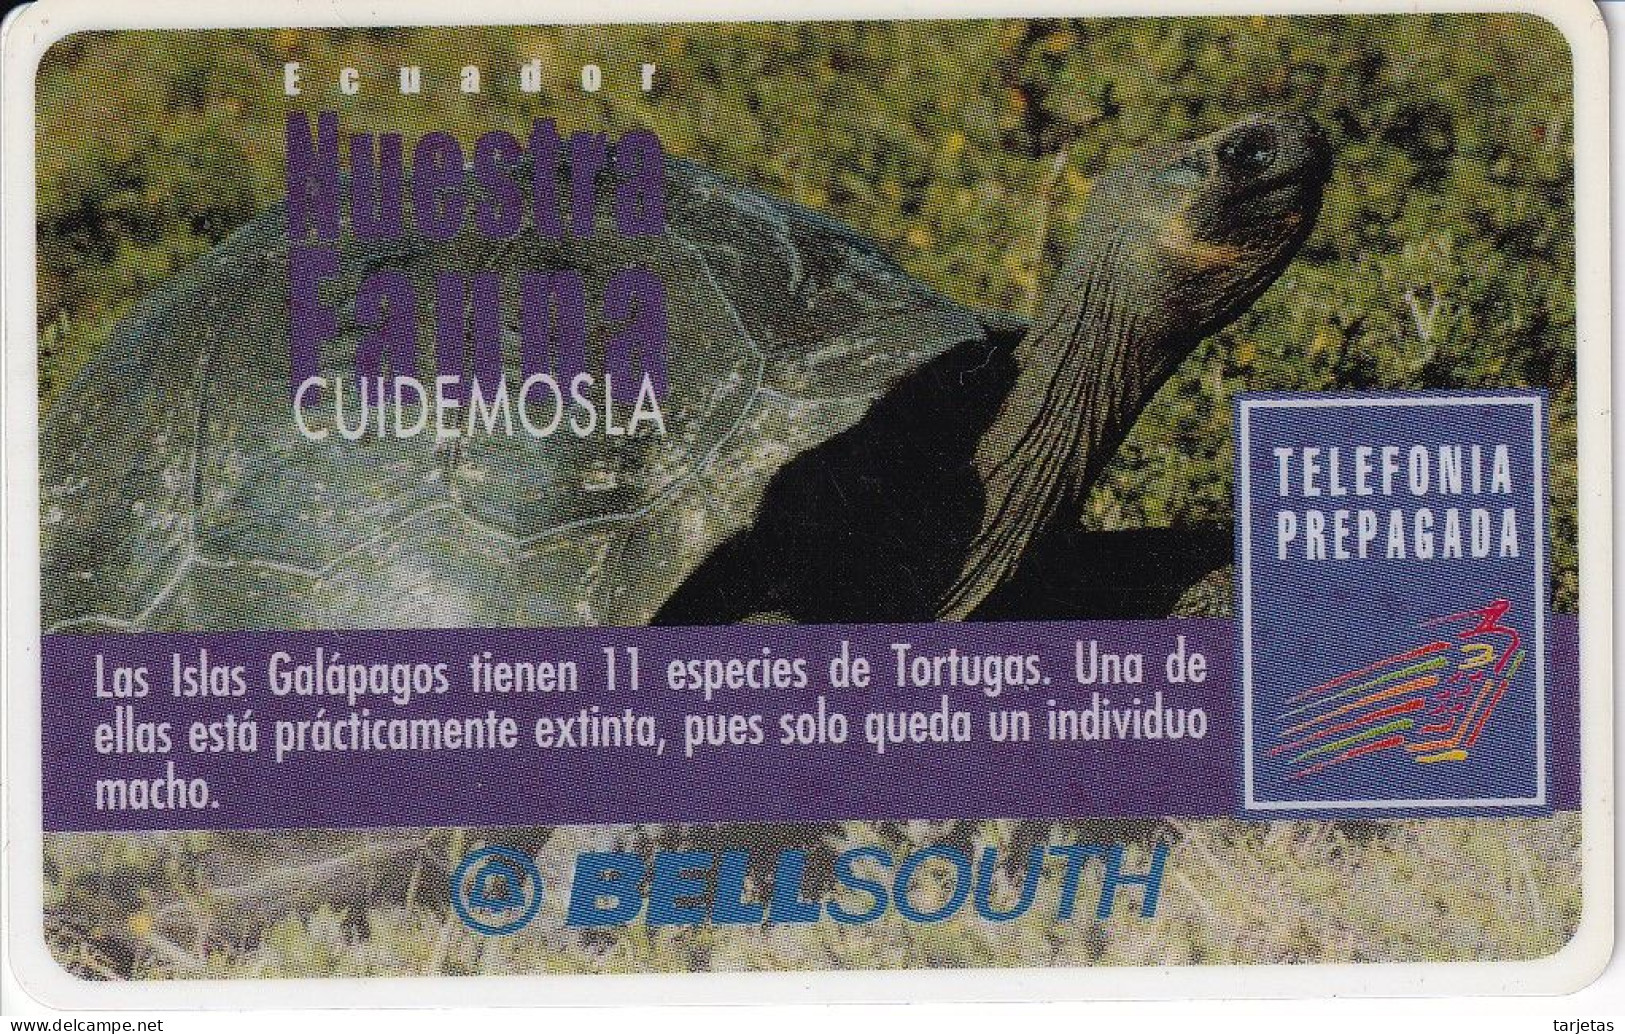 TARJETA DE ECUADOR DE UNA TORTUGA DE LAS GALAPAGOS (TURTLE) CON MARCO BLANCO ALREDEDOR - CADUCA NOVIEMBRE 2000 - Ecuador